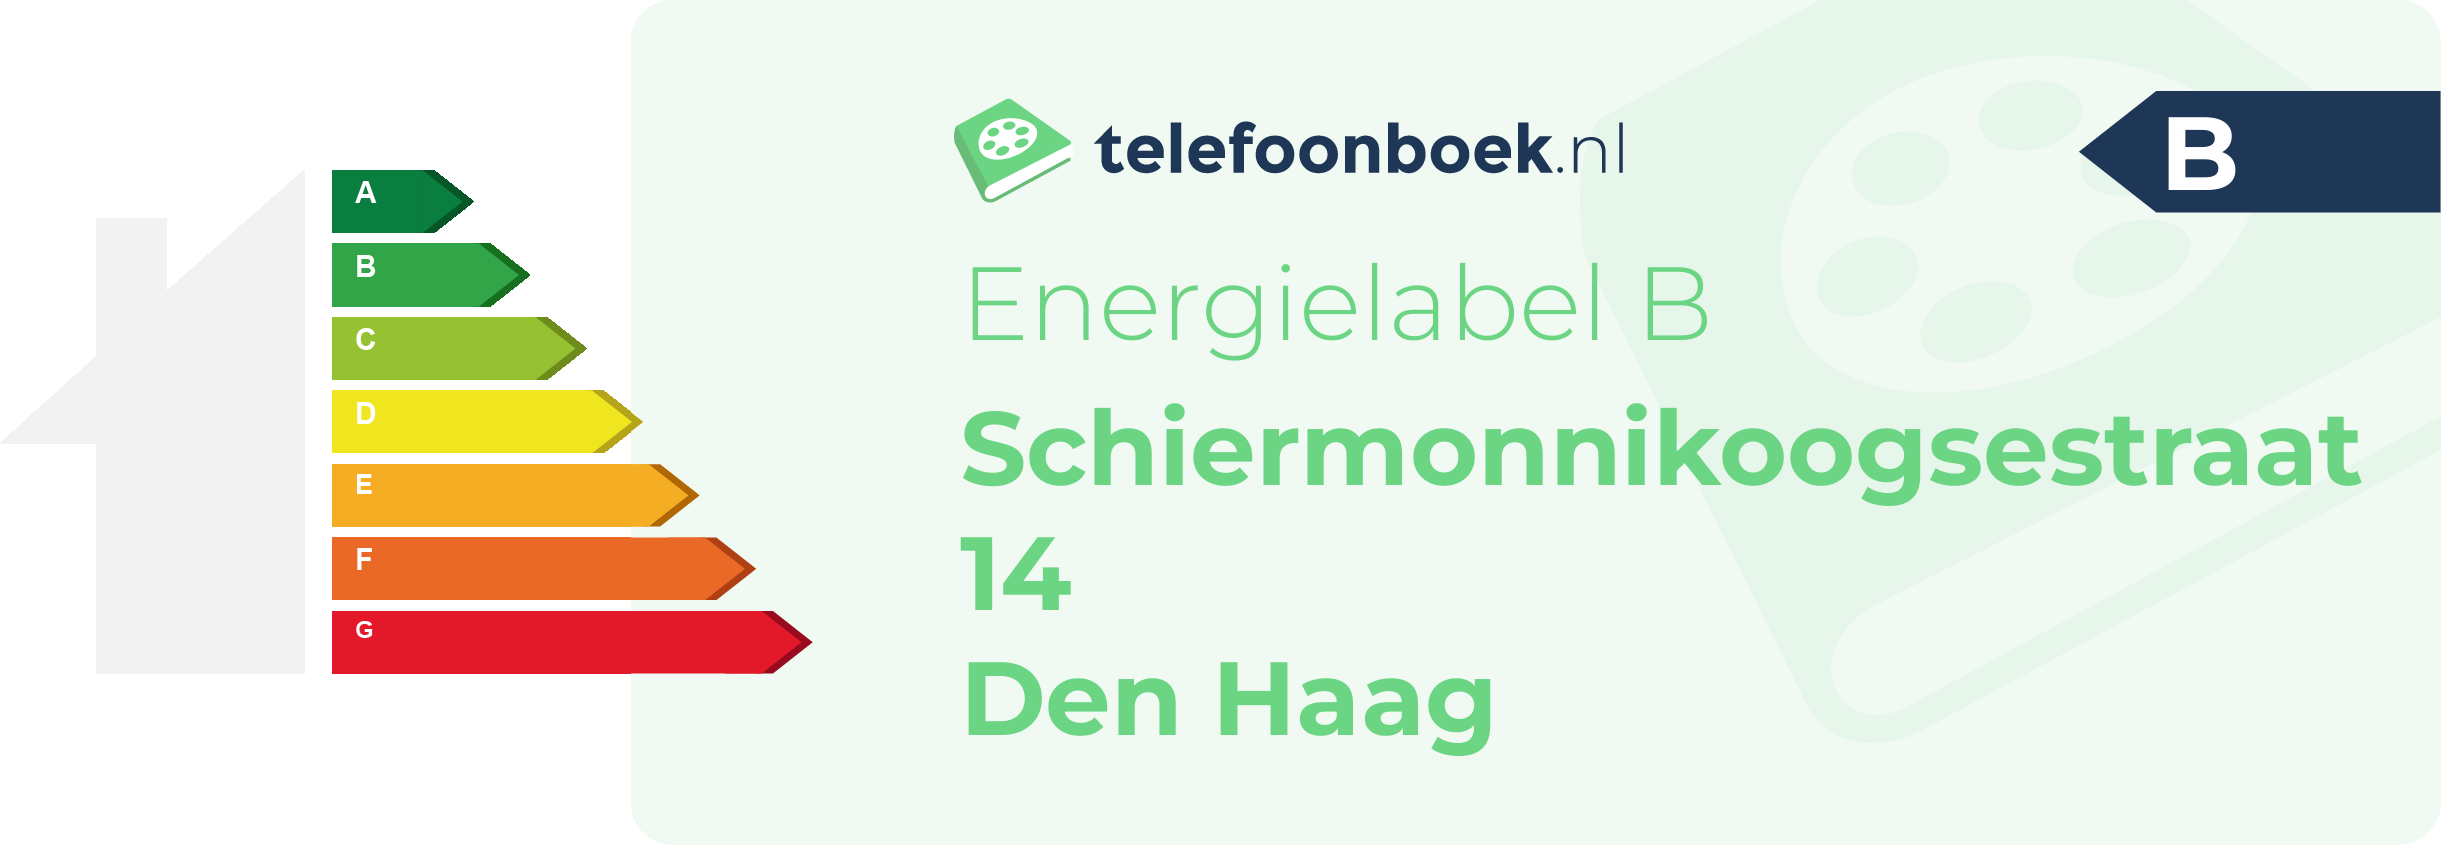 Energielabel Schiermonnikoogsestraat 14 Den Haag